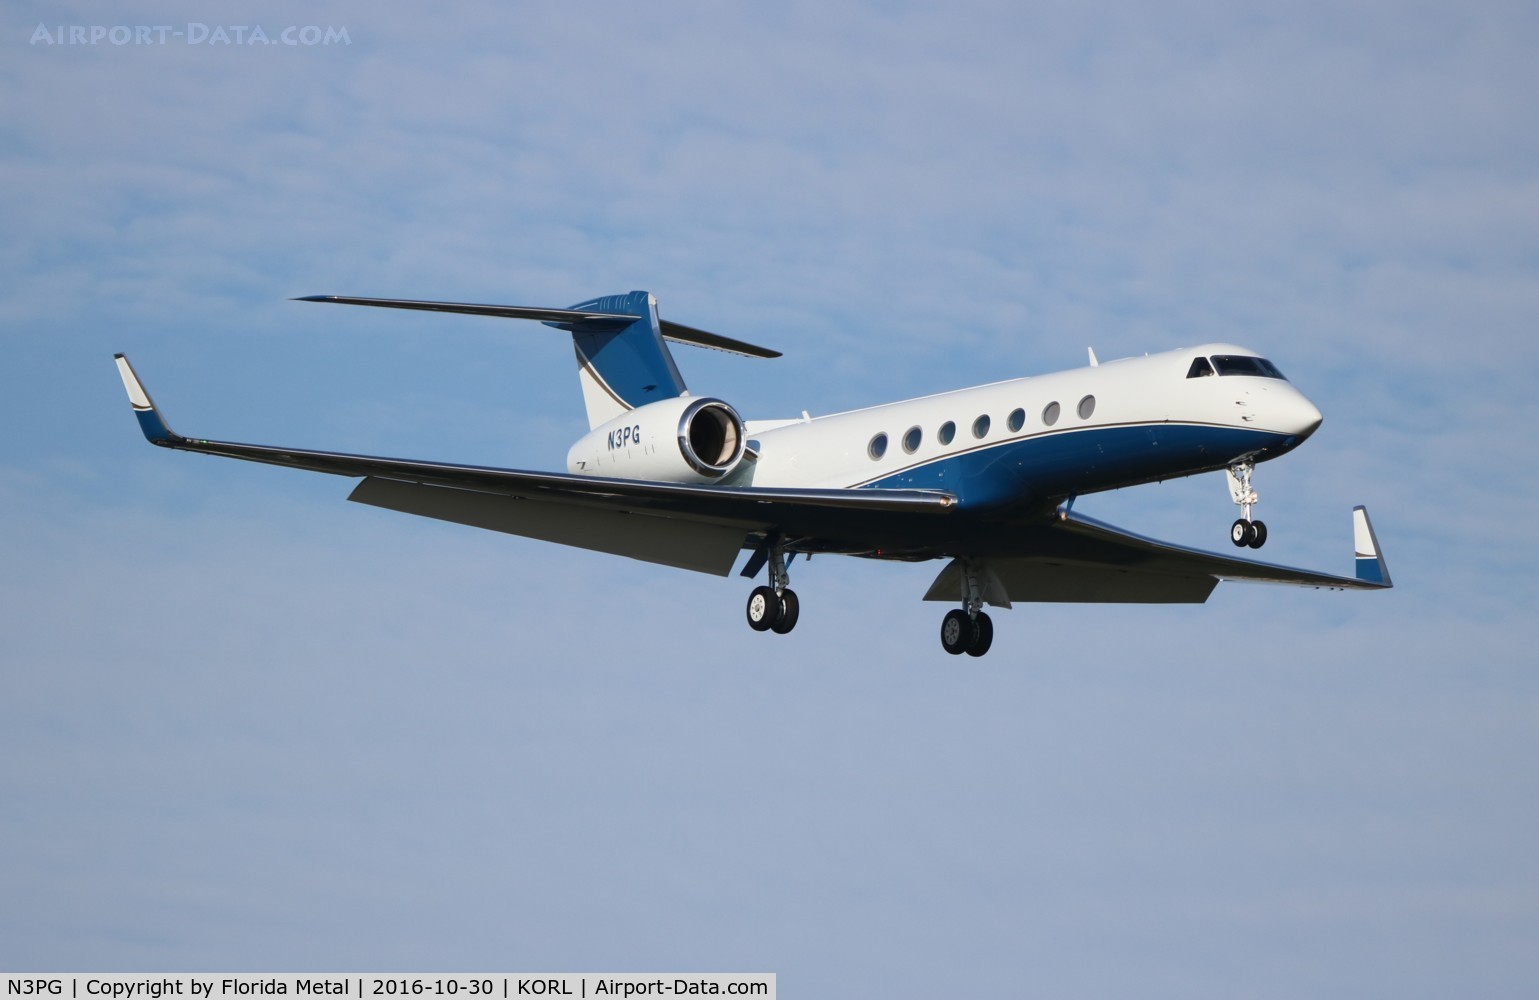 N3PG, 2005 Gulfstream Aerospace GV-SP (G550) C/N 5091, G550 zx